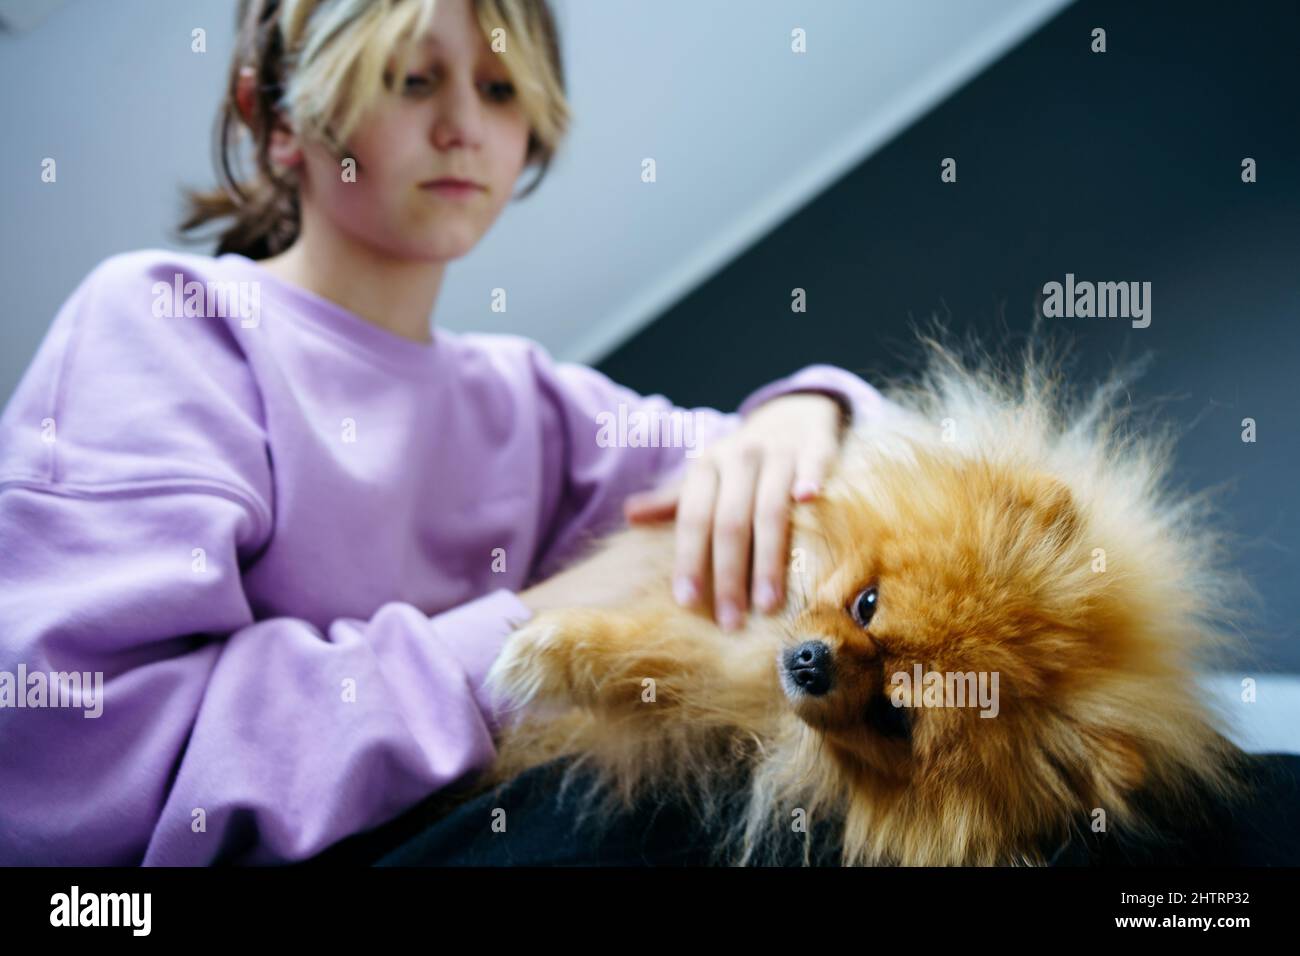 Ragazza teen proprietario che prende cura dei loro animali domestici, alimentando, grooming, gioca con il cane Foto Stock